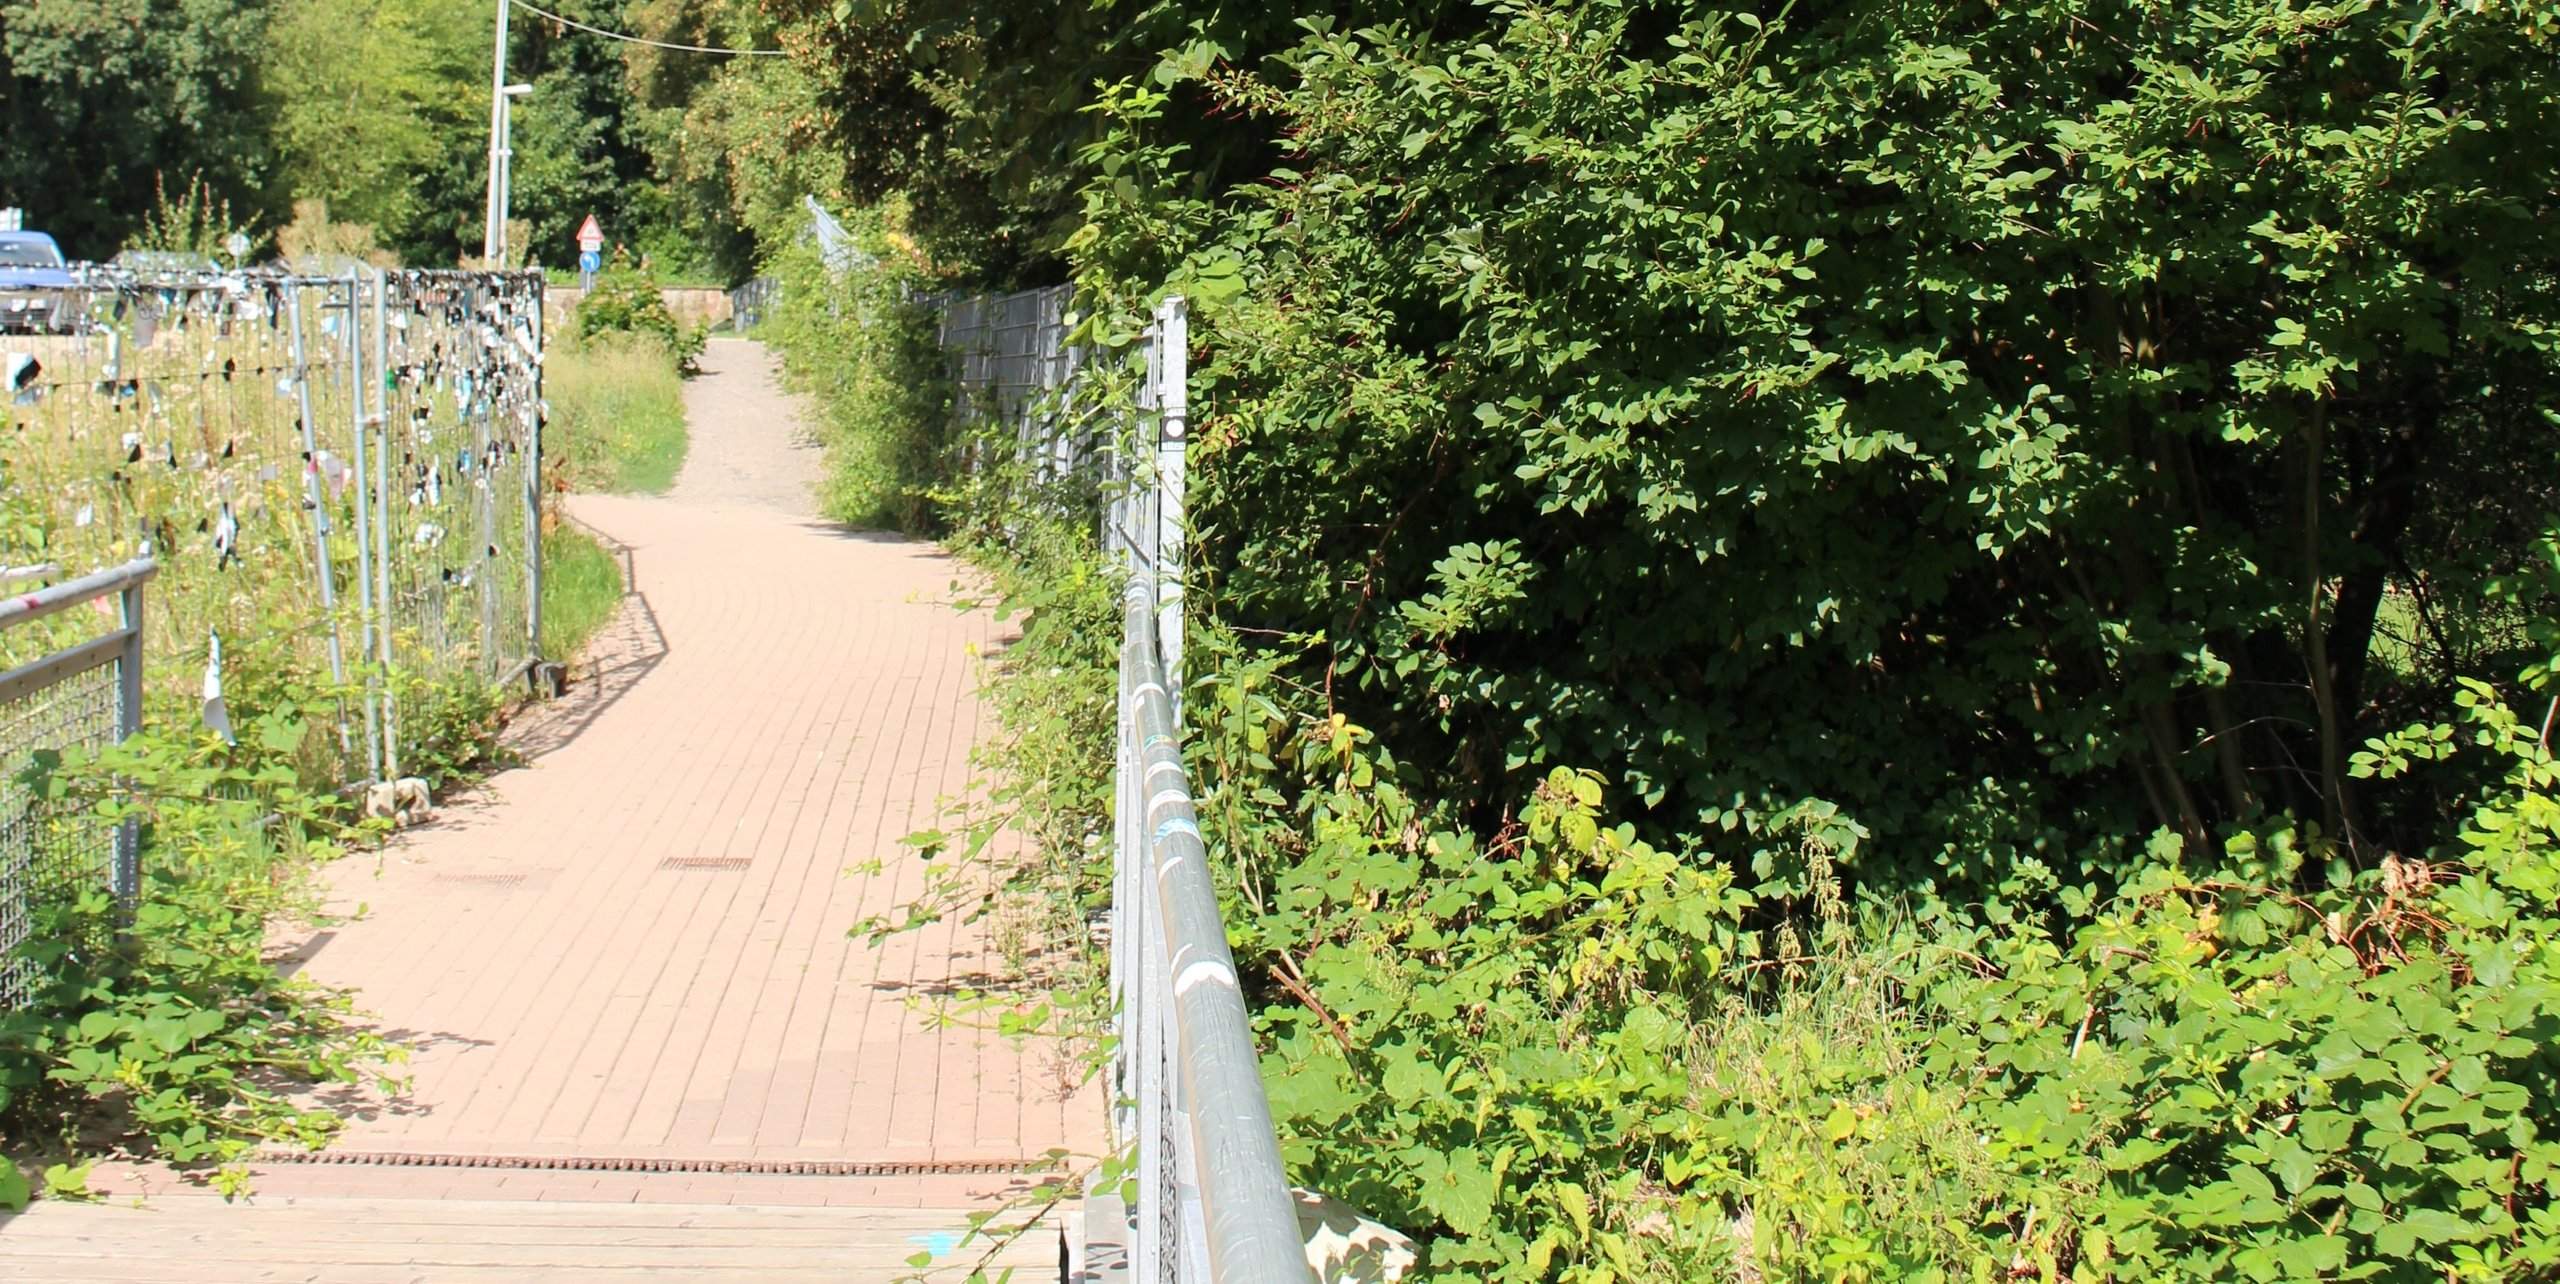 Botanischer Garten Marburg Genial Naturschutzbund Hat forderungen Zur Neugestaltung Vom Alten